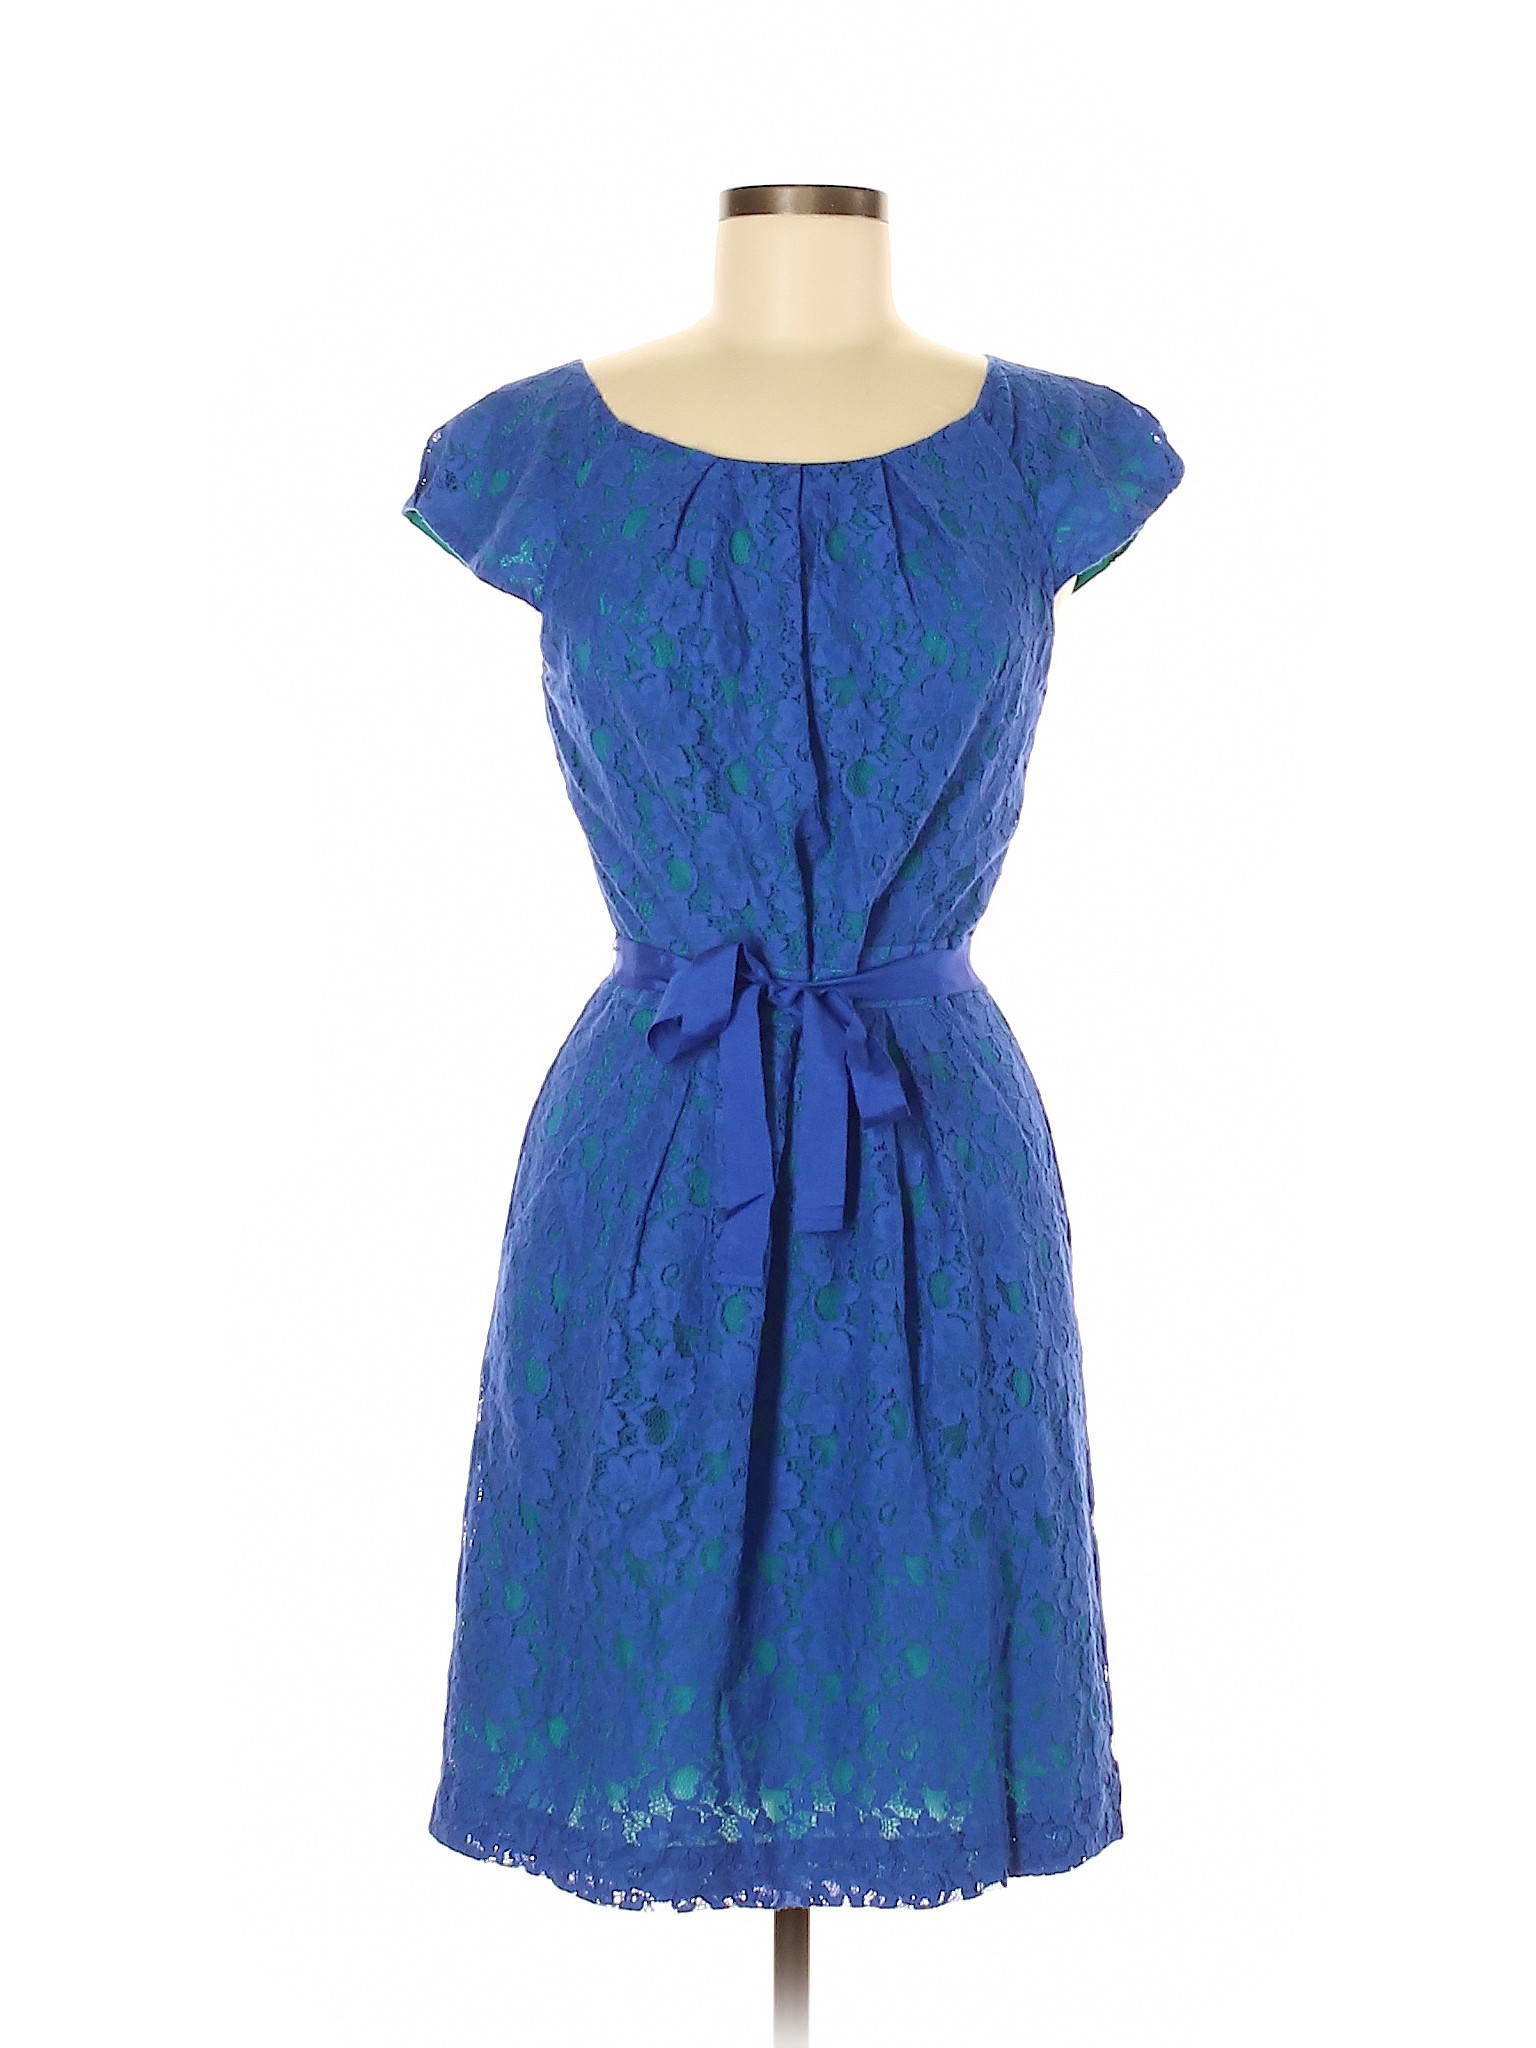 Bcbgmaxazria Women Blue Cocktail Dress 8 | eBay